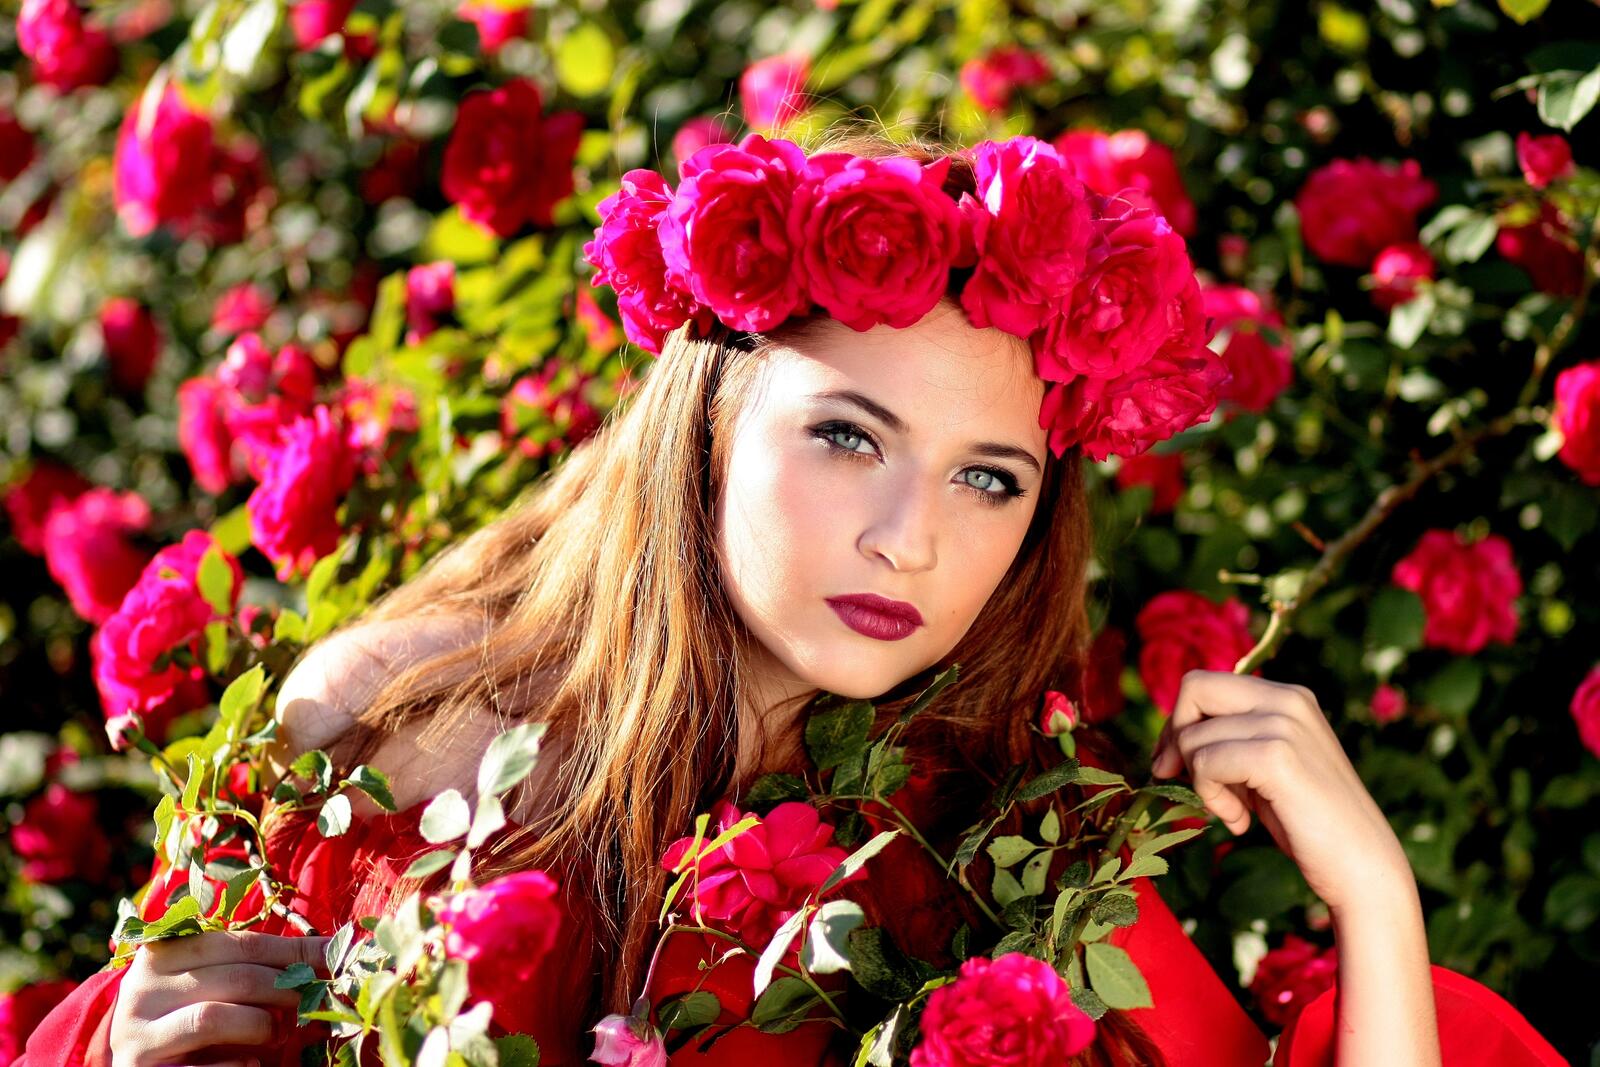 Бесплатное фото У девушке на голове венок из красных роз